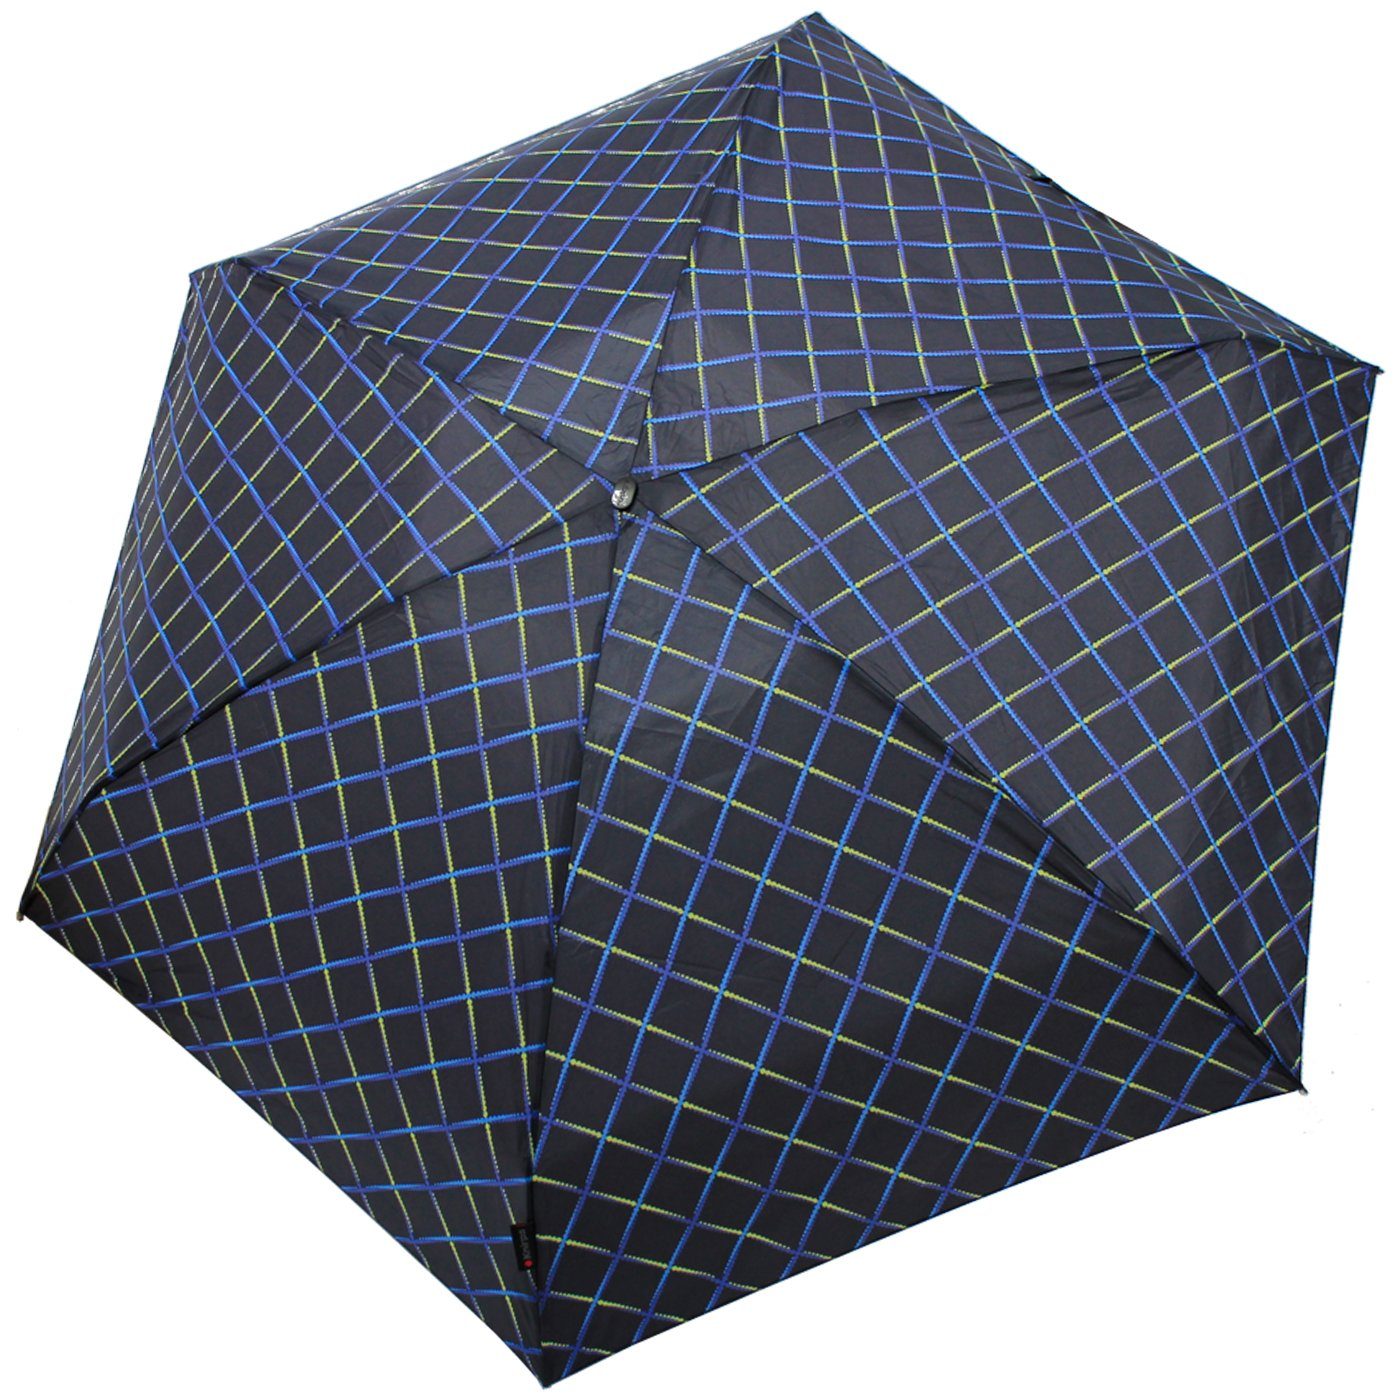 Begleiter, der Knirps® passt klein Taschenregenschirm kompakt, leicht Tasche Mini-Schirm Travel in der jede zuverlässige